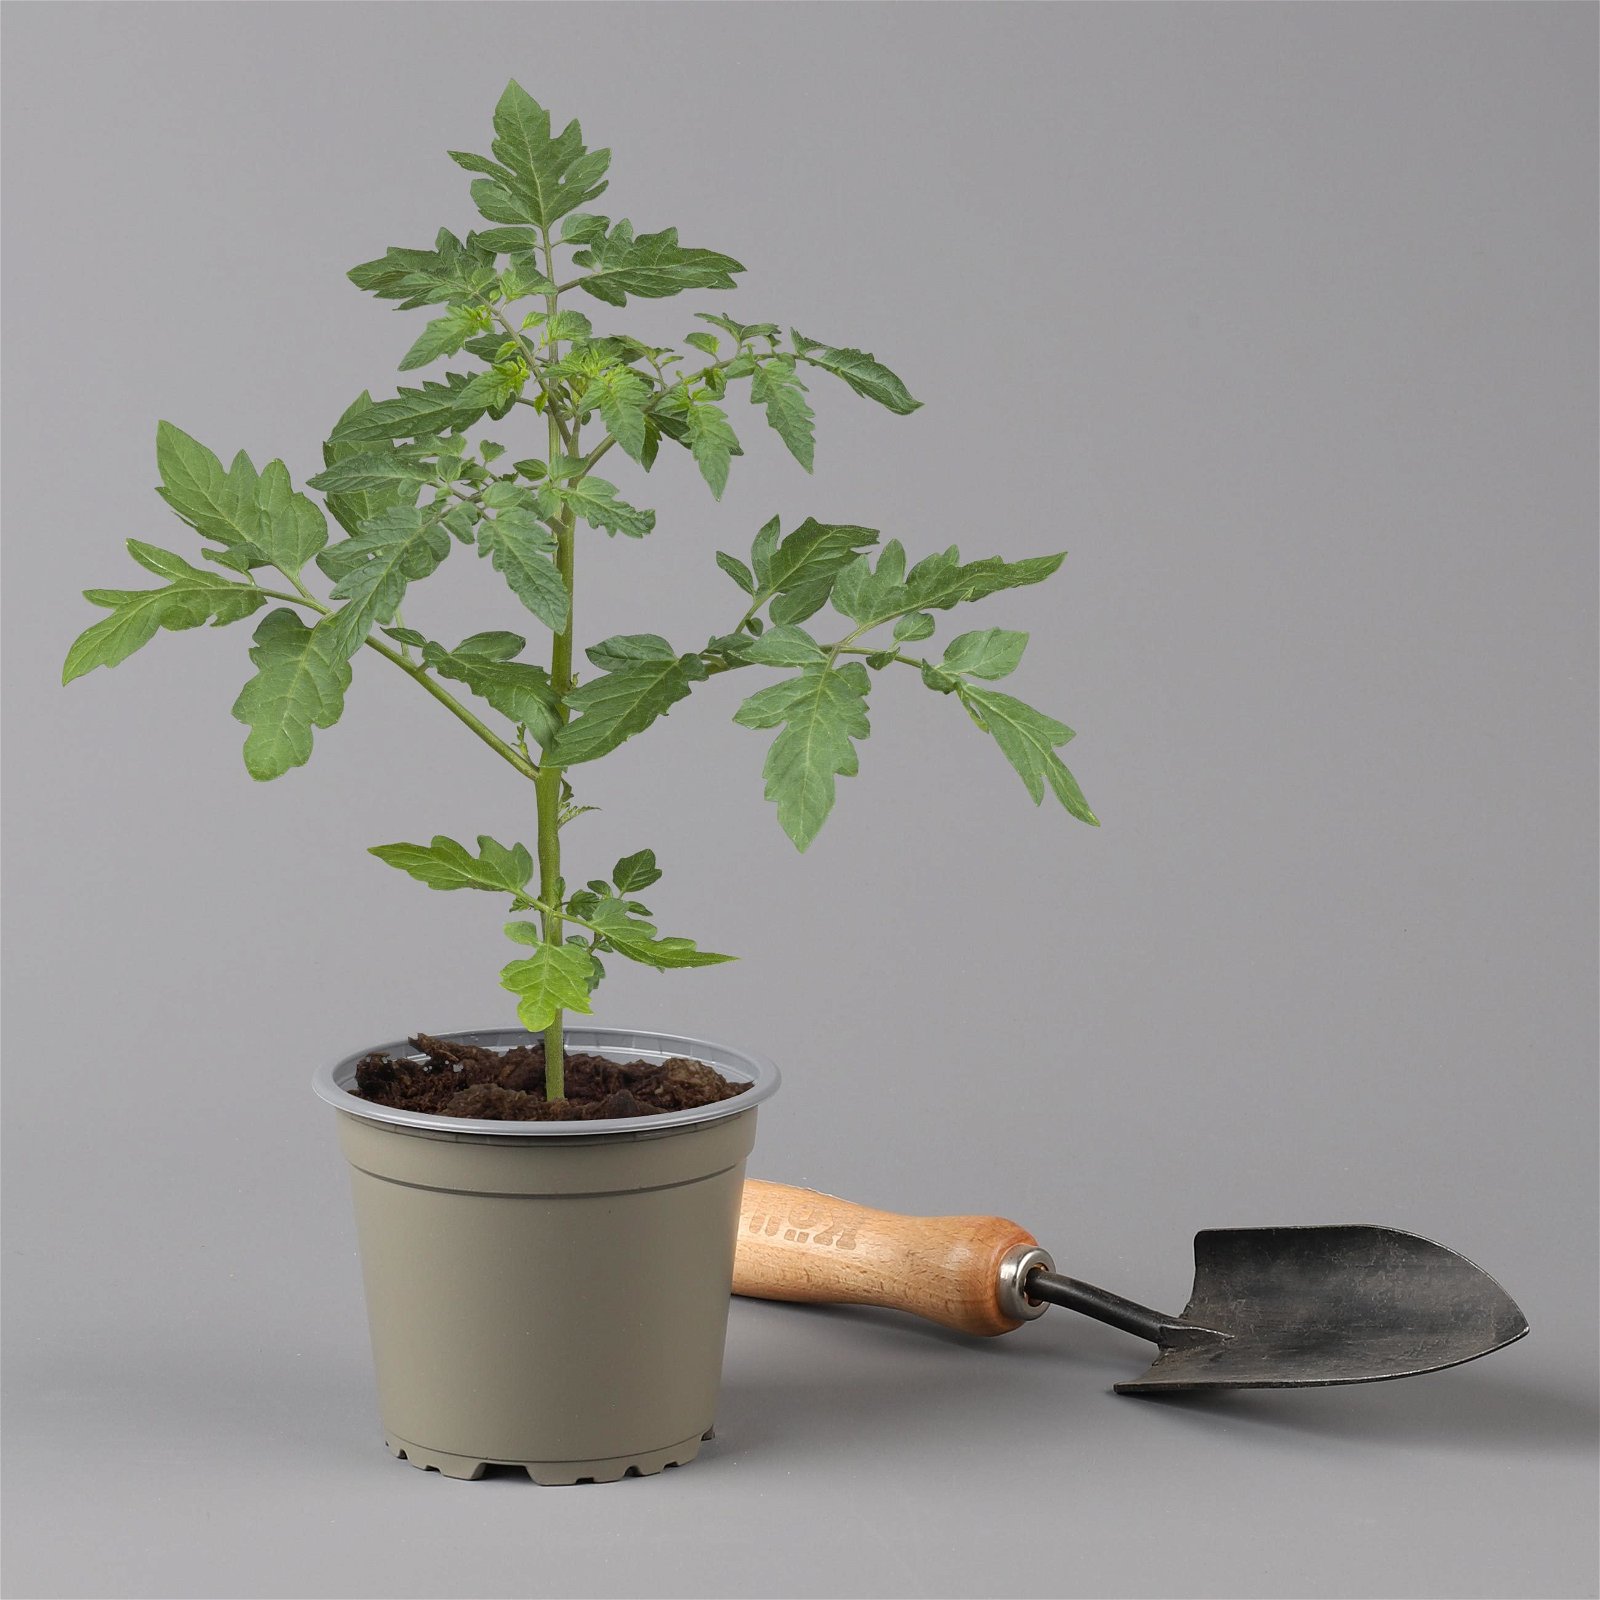 Tomatenpflanzen-Mix, Topf-Ø 12 cm, 5er-Set